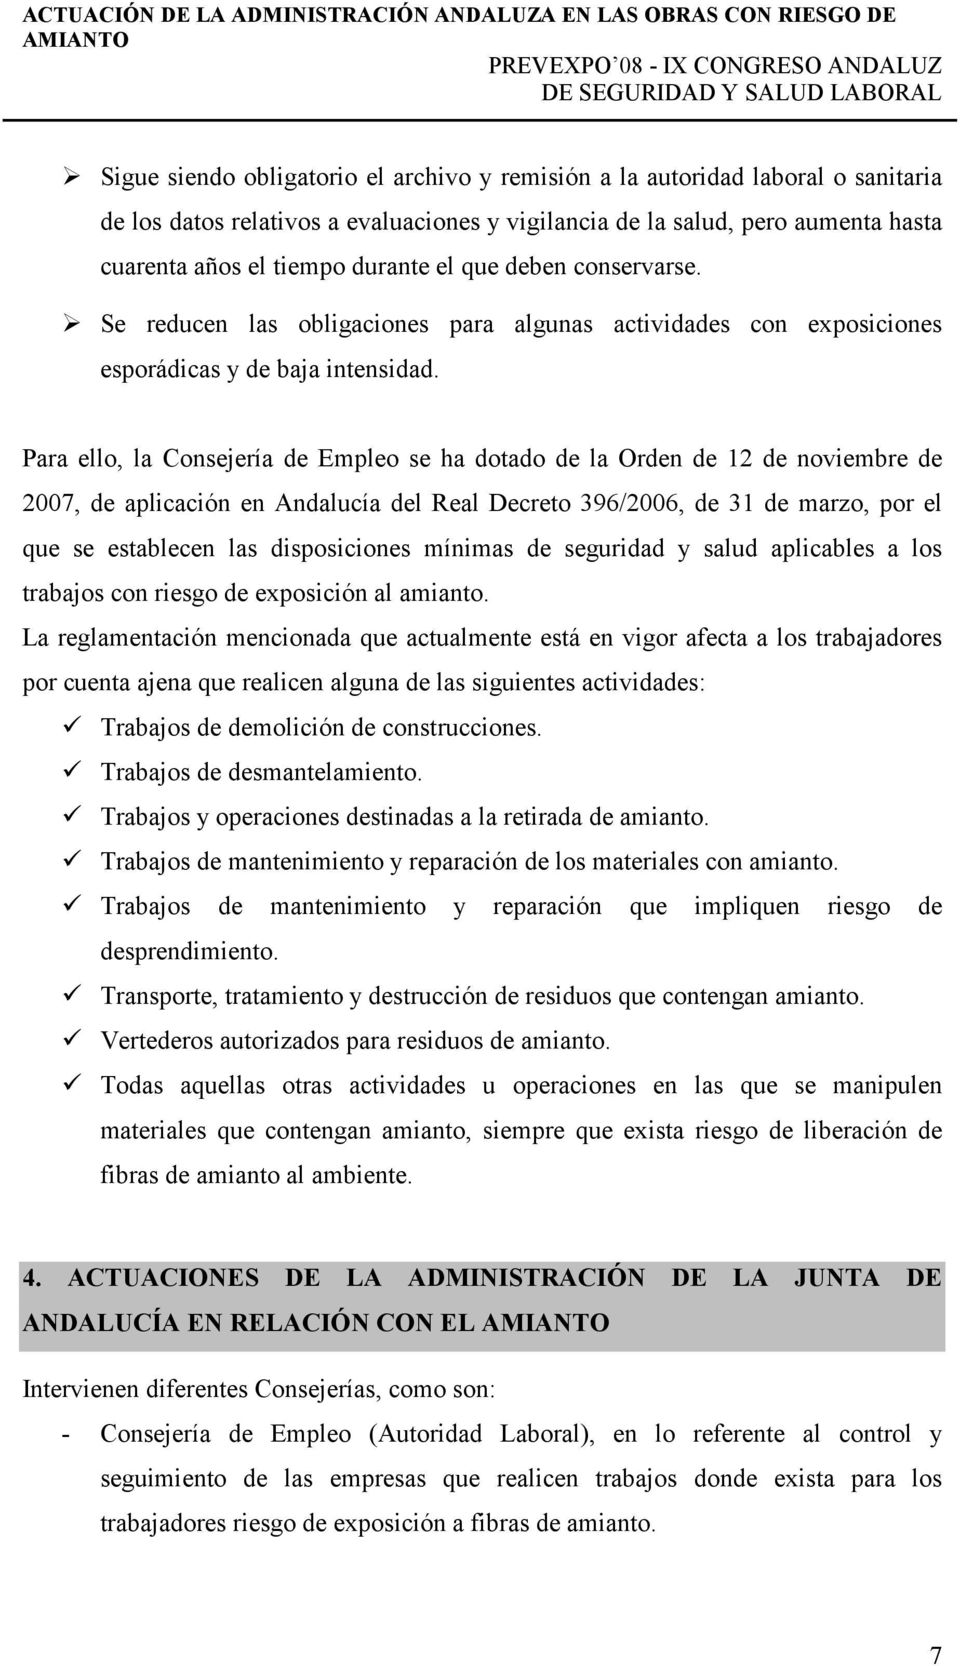 Para ello, la Consejería de Empleo se ha dotado de la Orden de 12 de noviembre de 2007, de aplicación en Andalucía del Real Decreto 396/2006, de 31 de marzo, por el que se establecen las